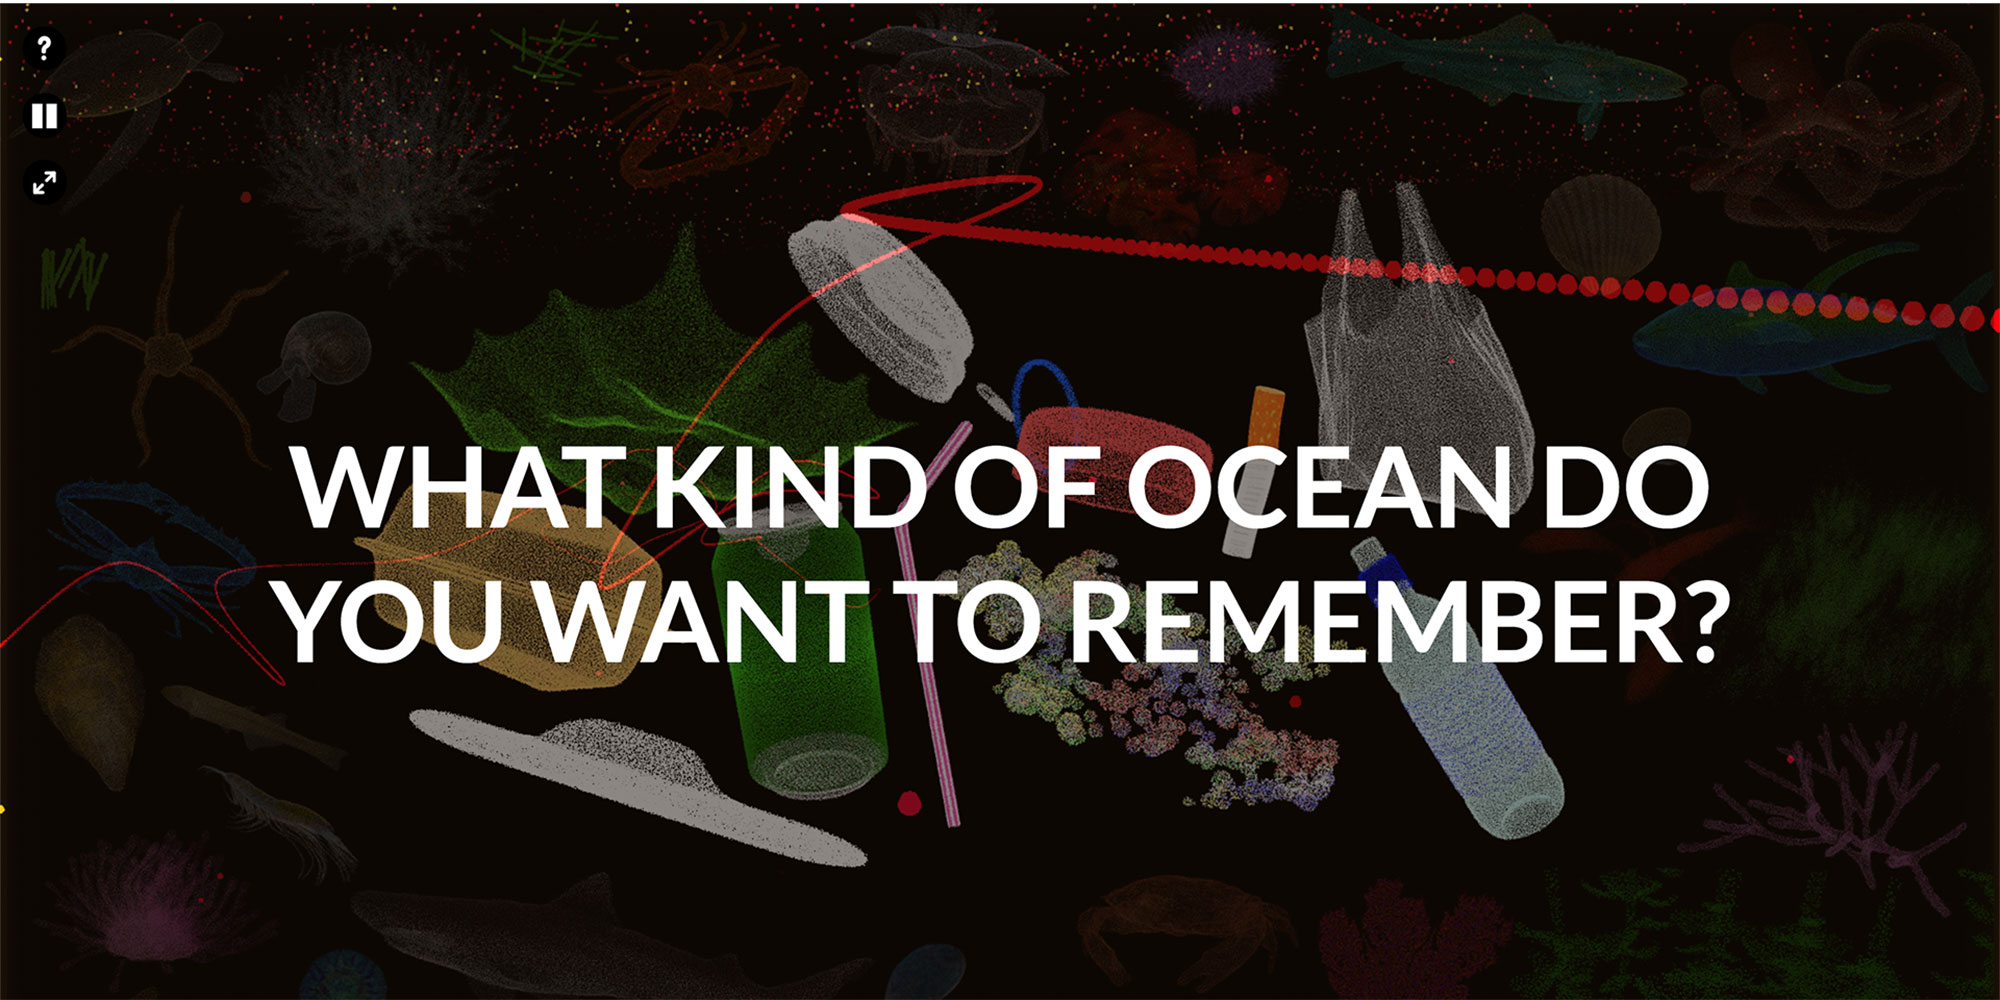 Google Arts & Culture - Acidifying Ocean, Cristina Tarquini (IT/FR)